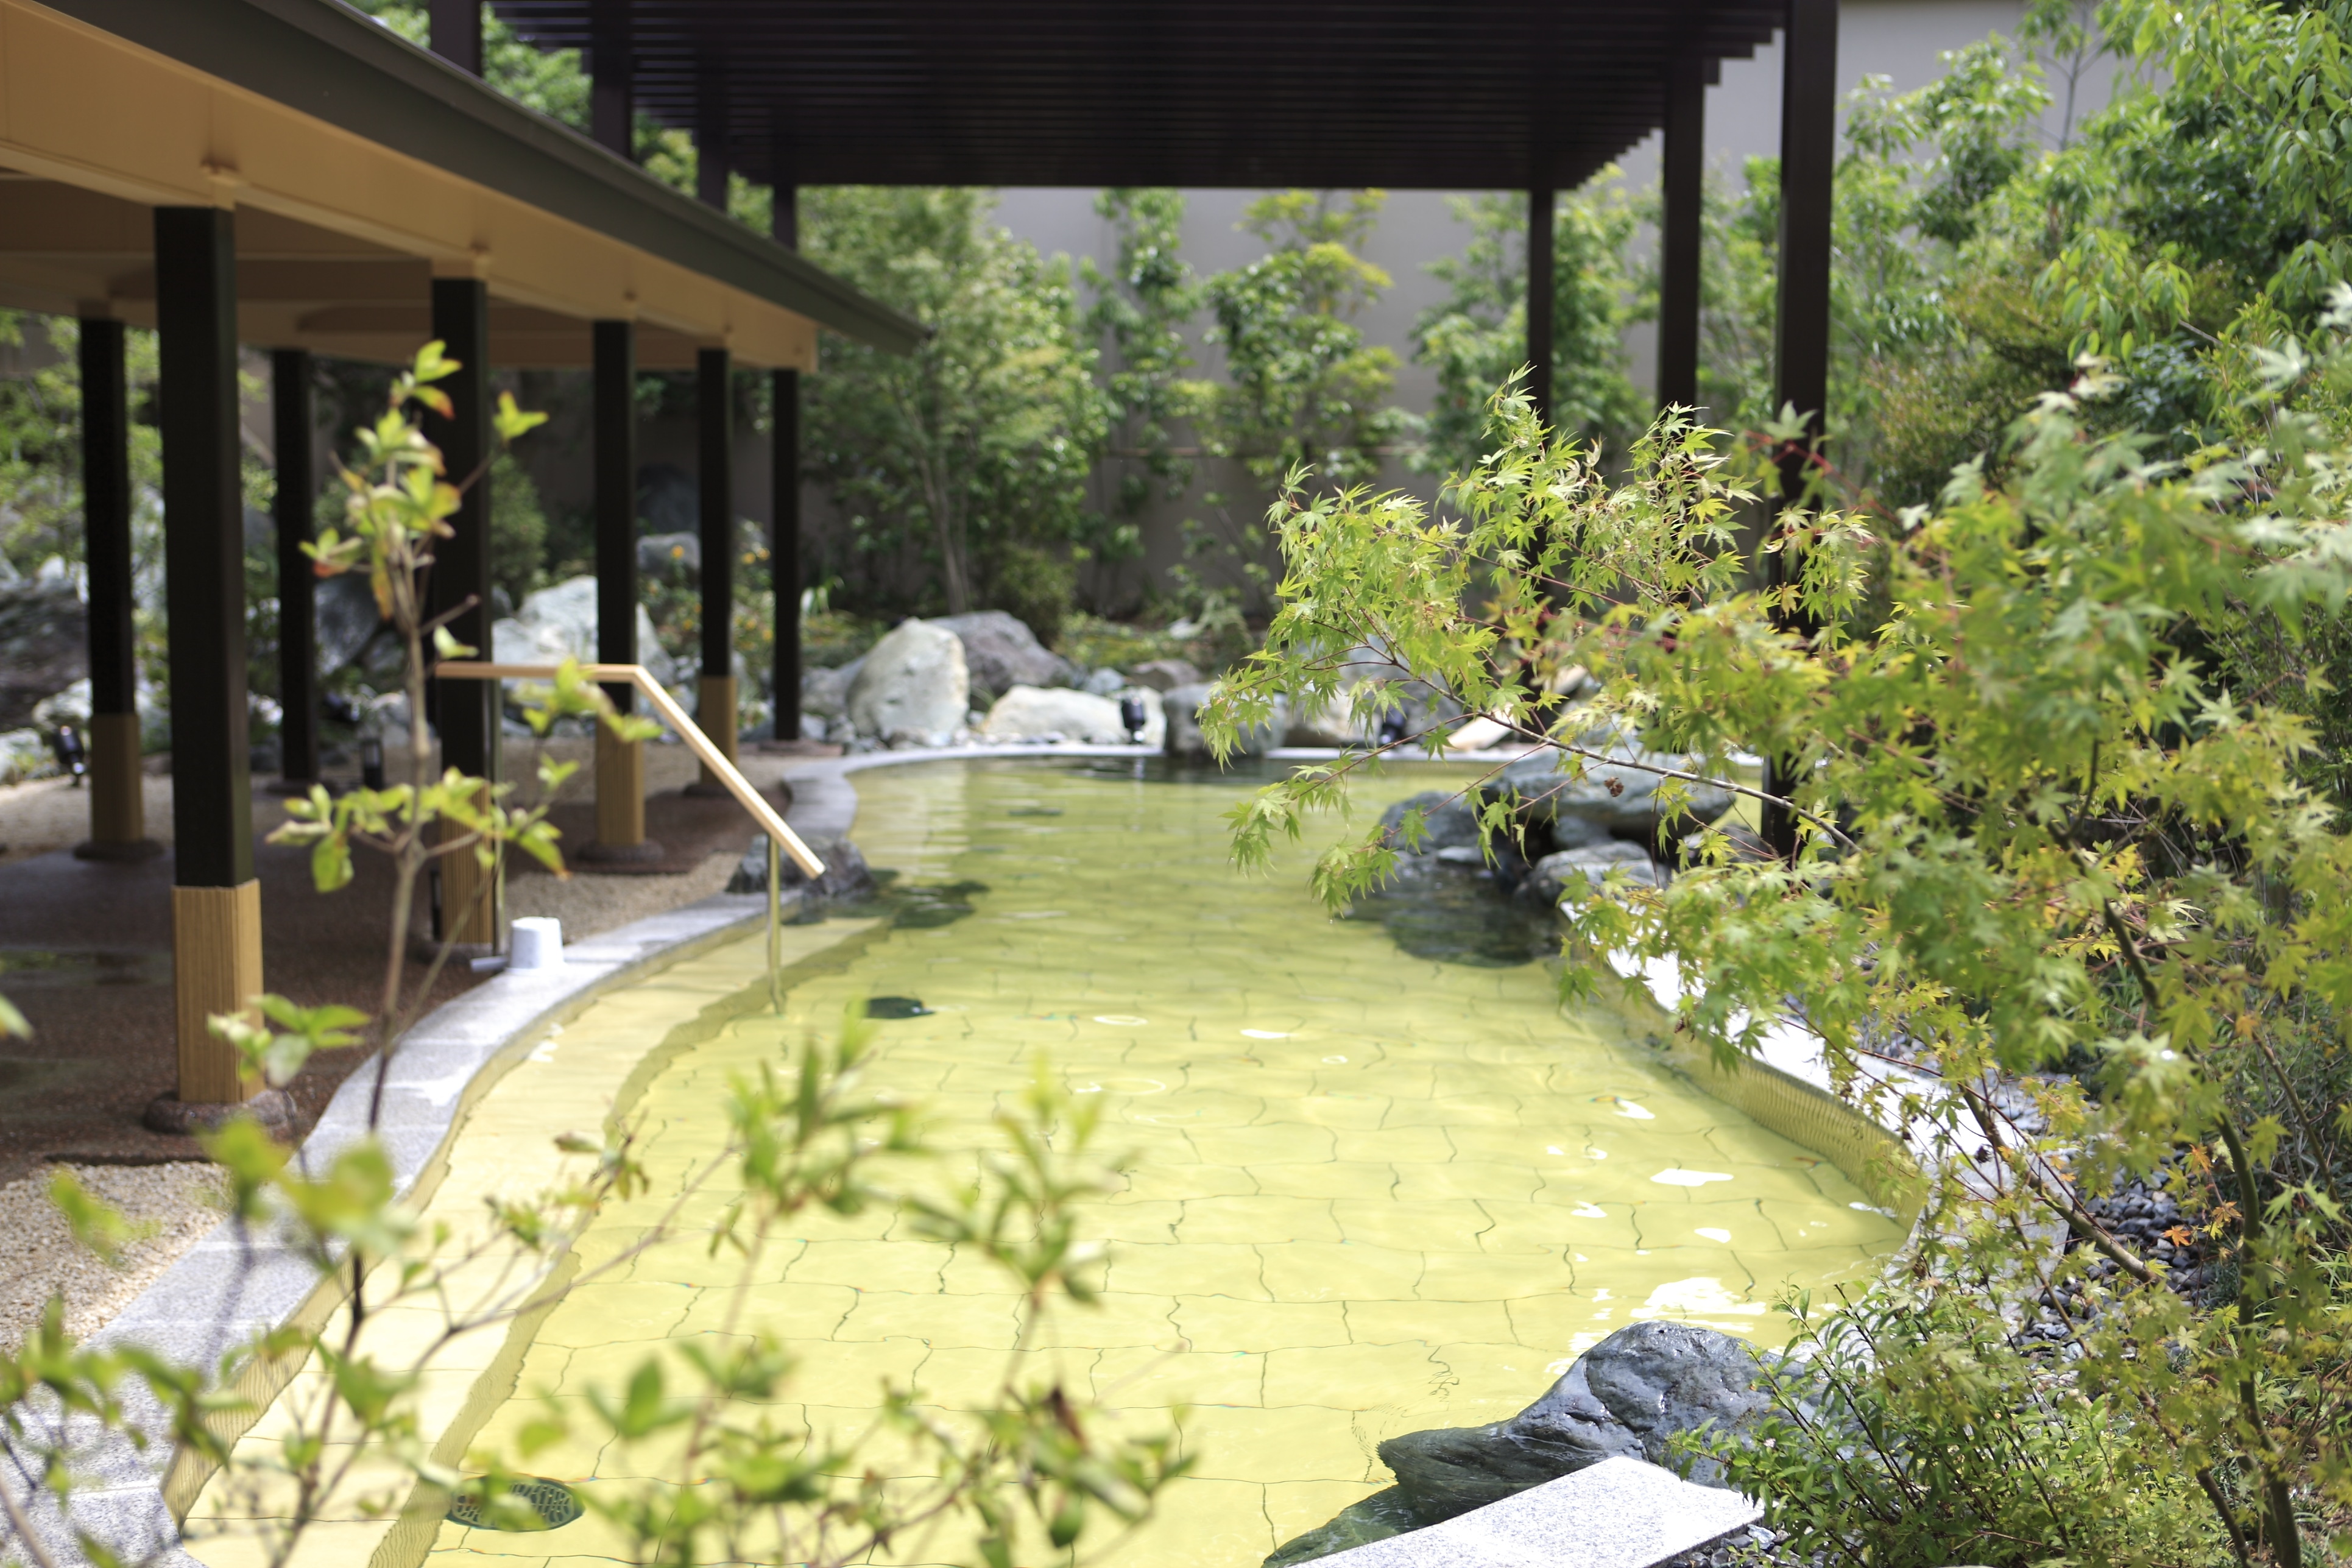 【露天風呂】四季折々の自然と開放感あふれる露天風呂「桧香の湯」